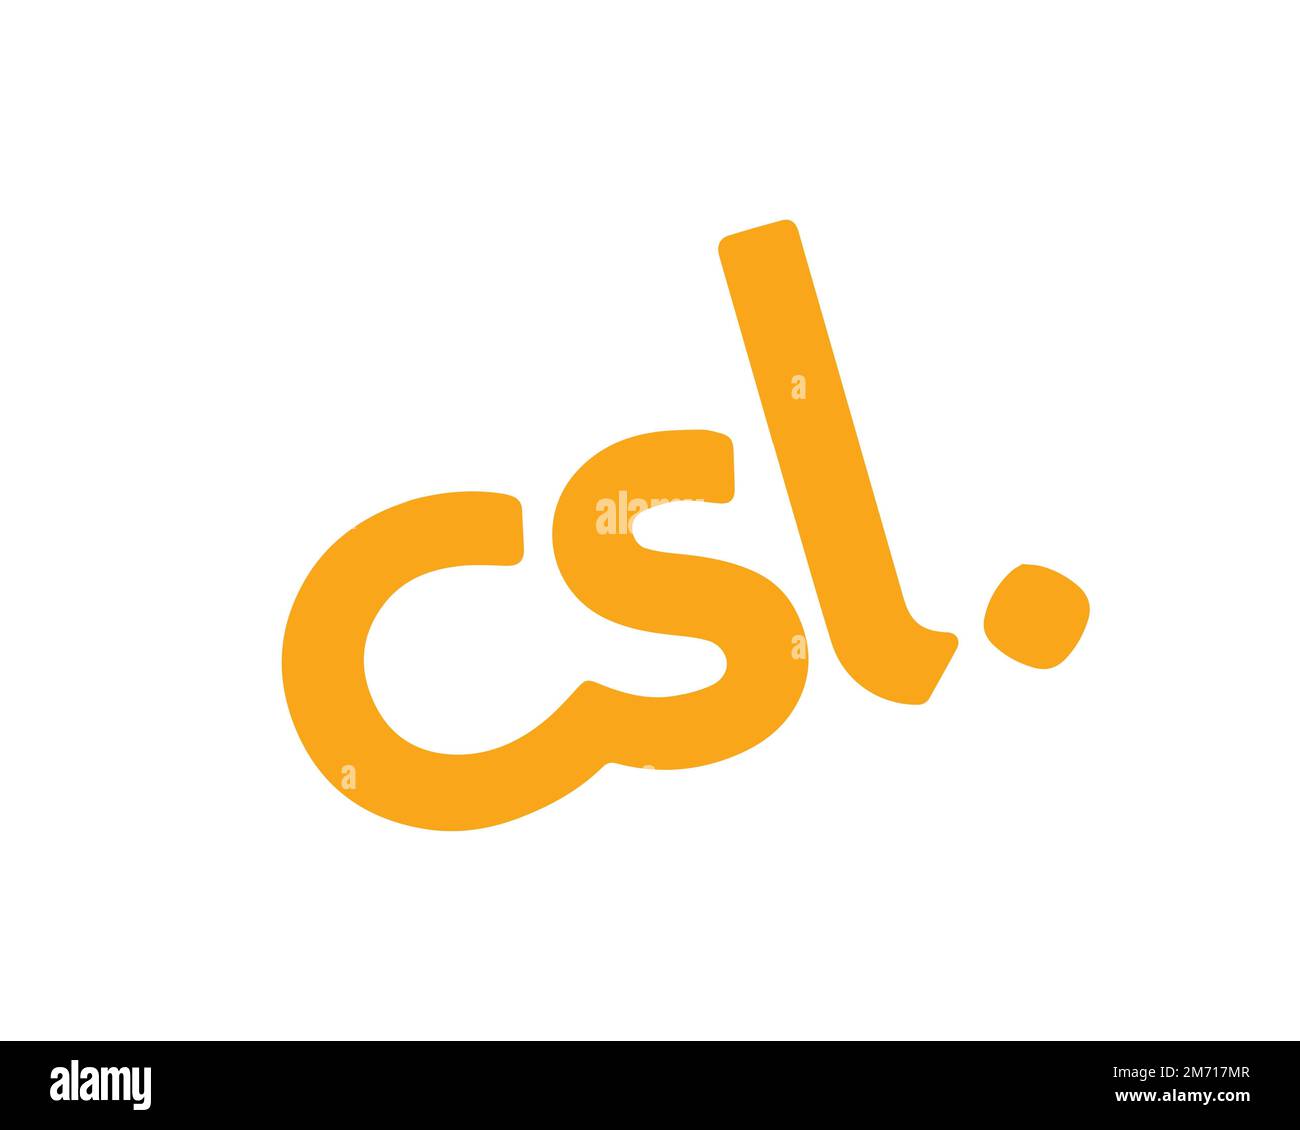 CSL Mobile, logo pivoté, fond blanc Banque D'Images